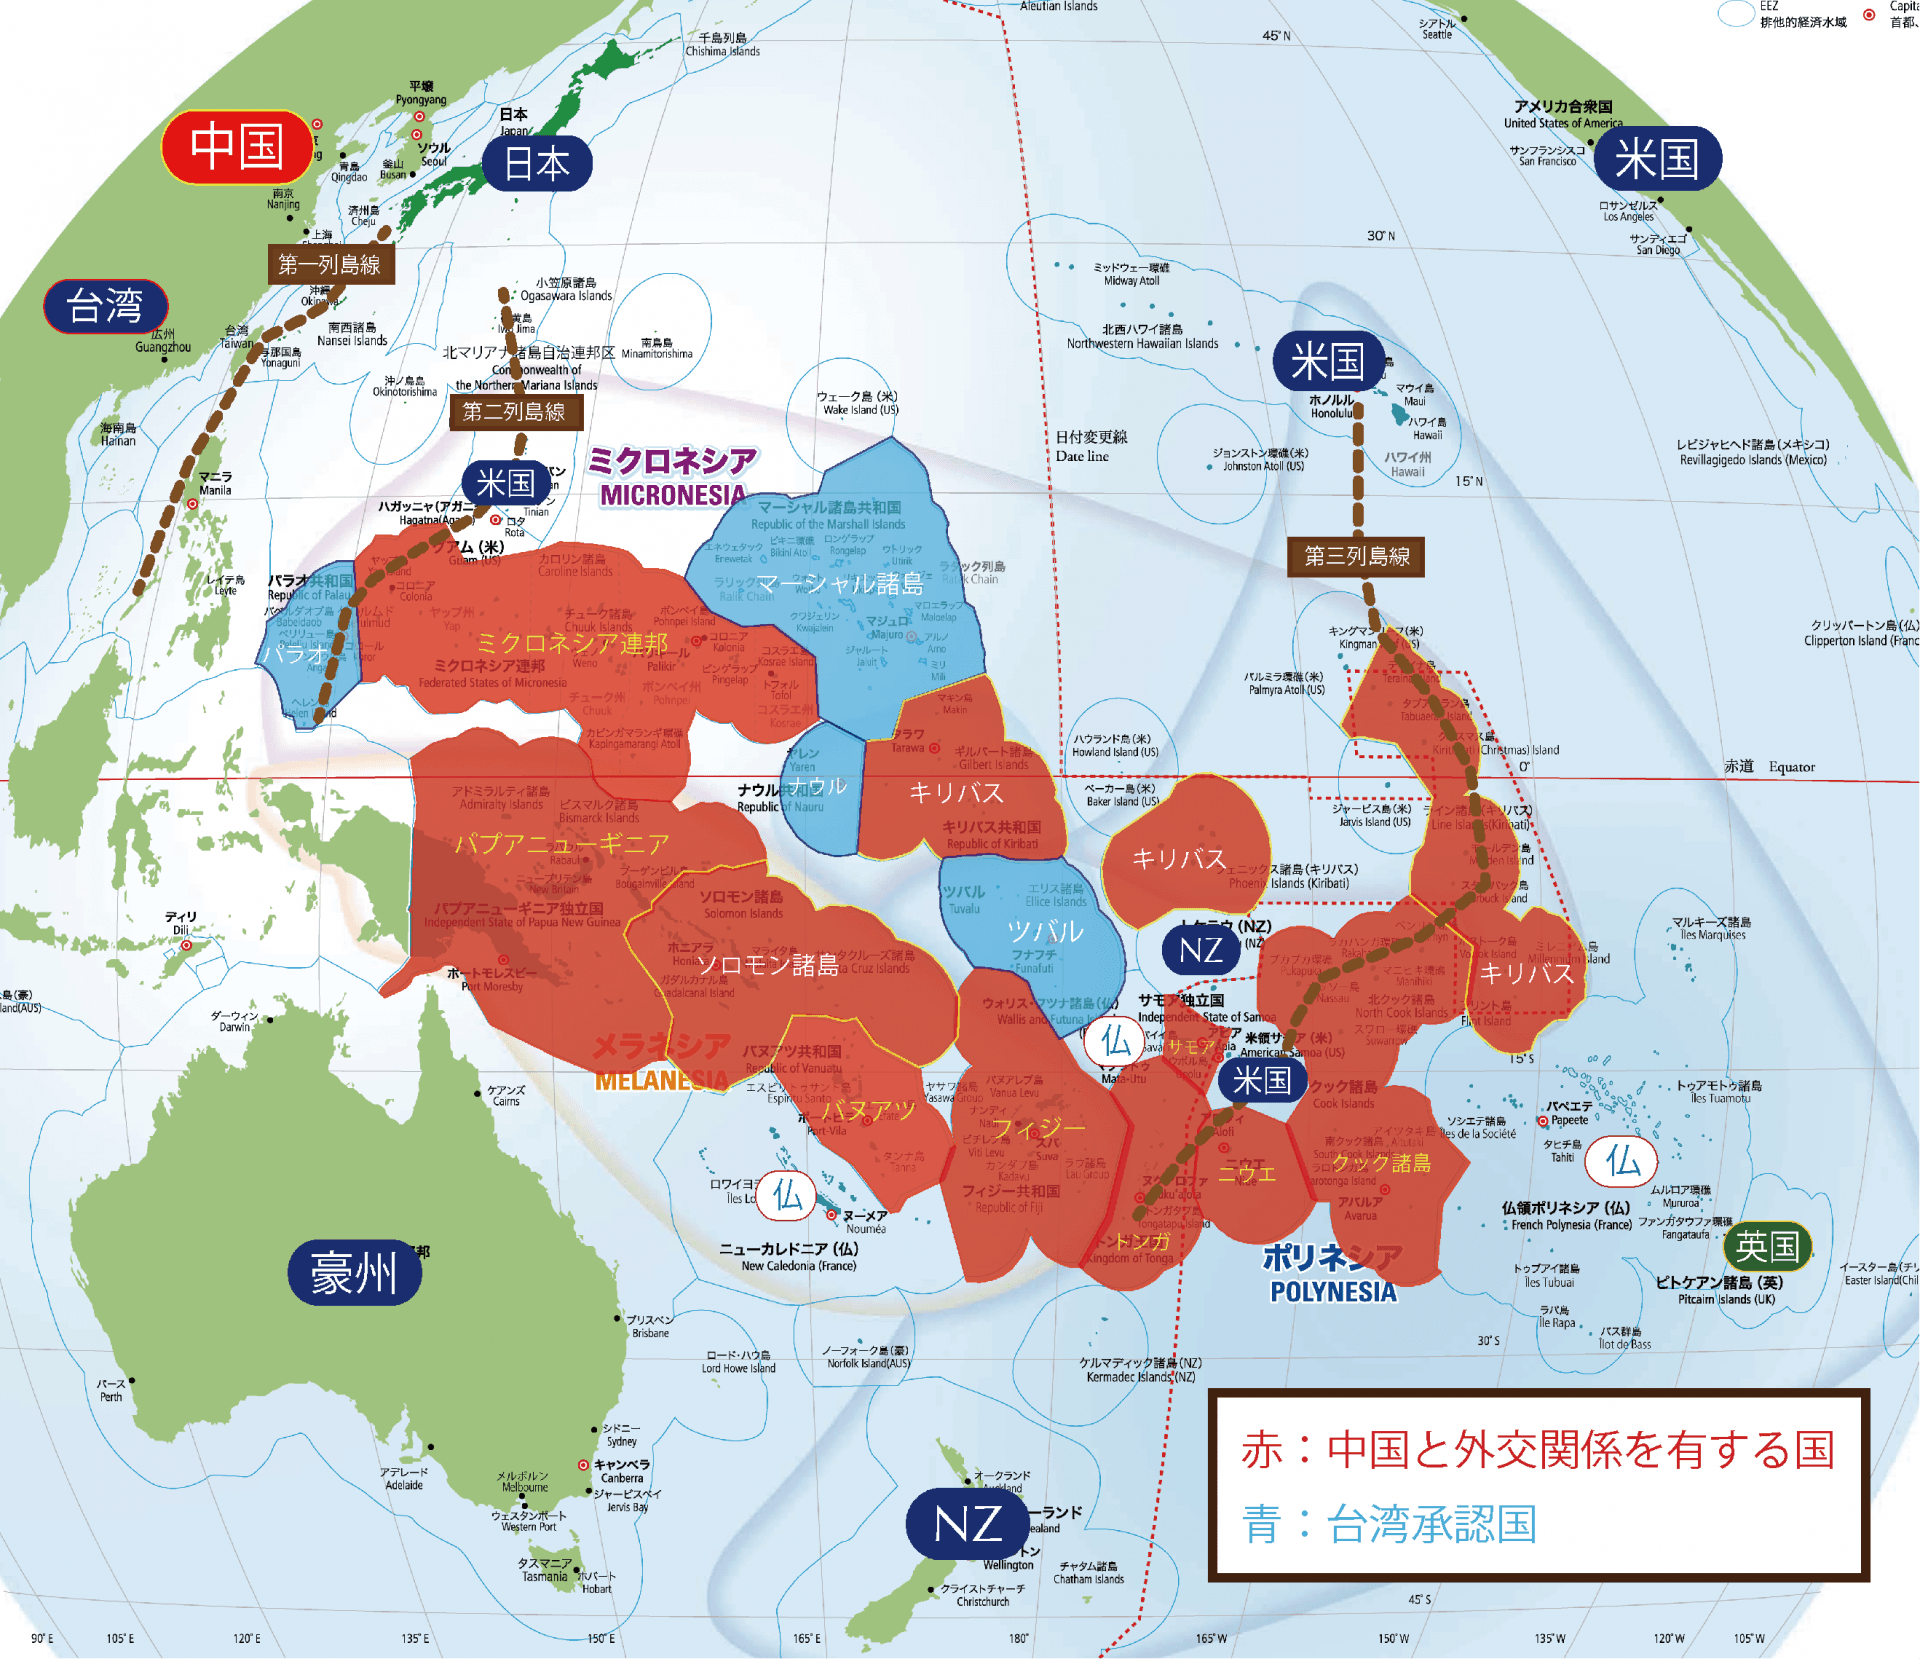 太平洋島嶼国と中台関係（笹川平和財団太平洋マップをもとに筆者作成）